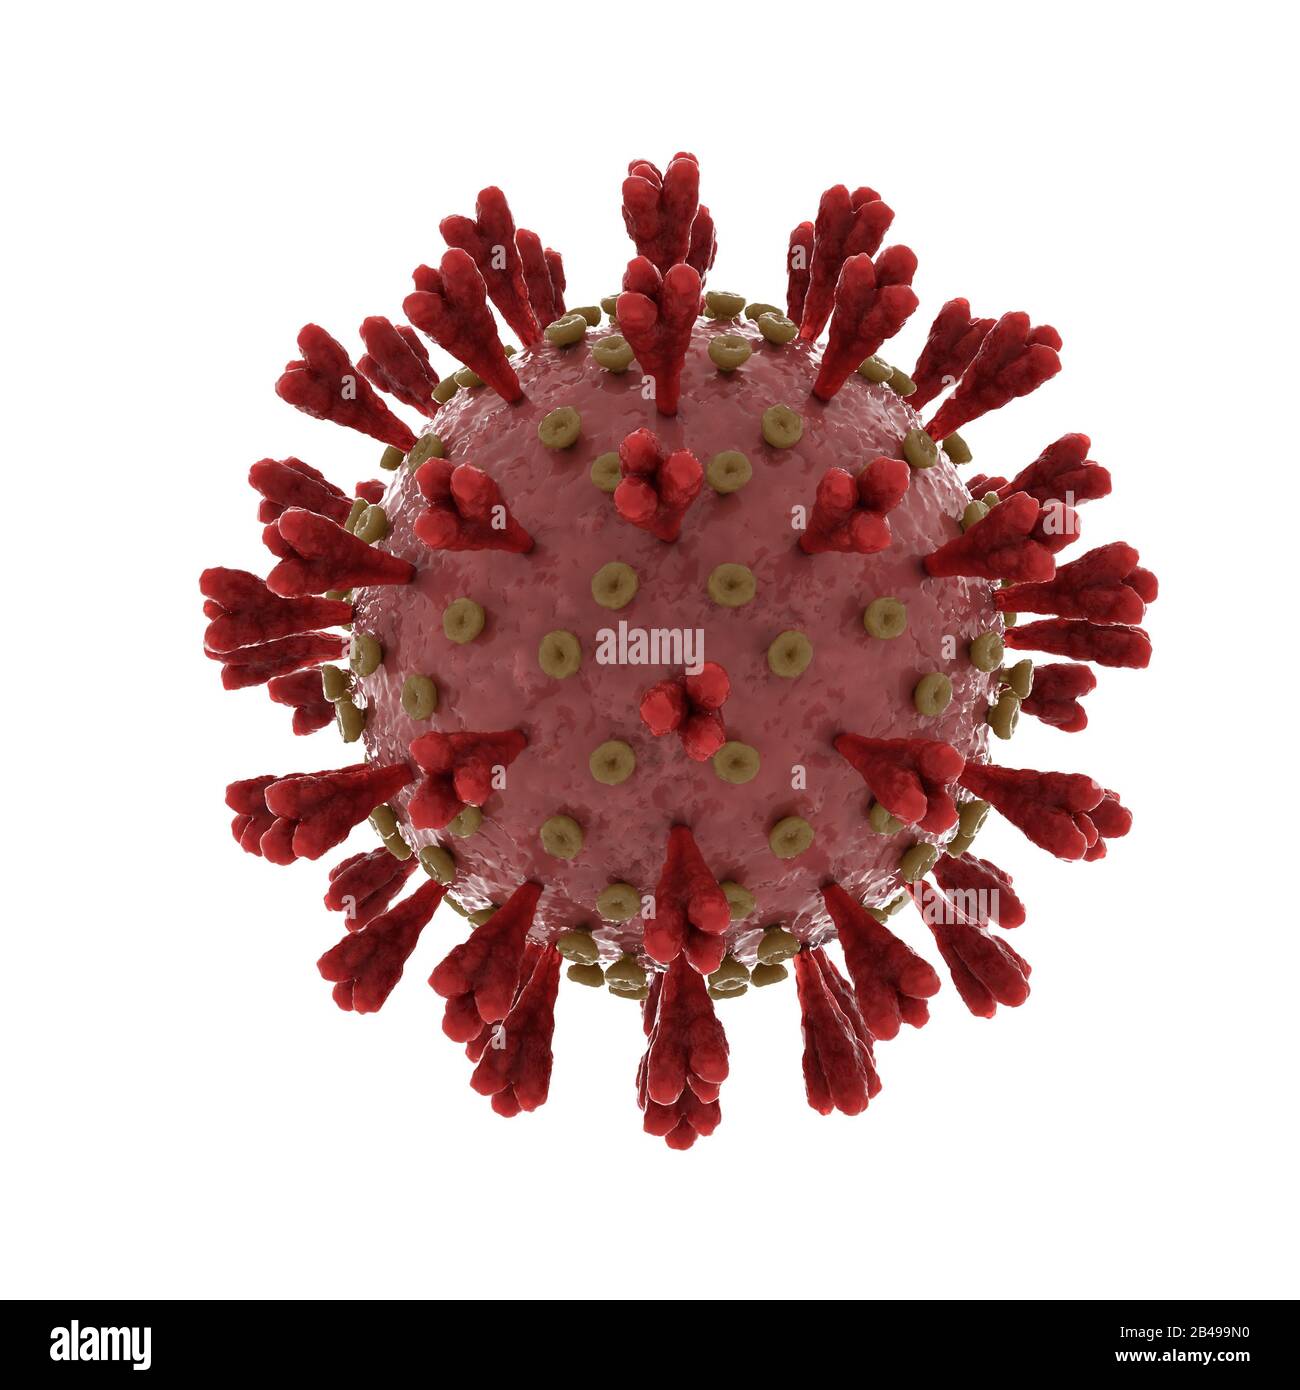 Syndrome respiratoire aigu sévère coronavirus 2 causant le covid 19 sur blanc Banque D'Images